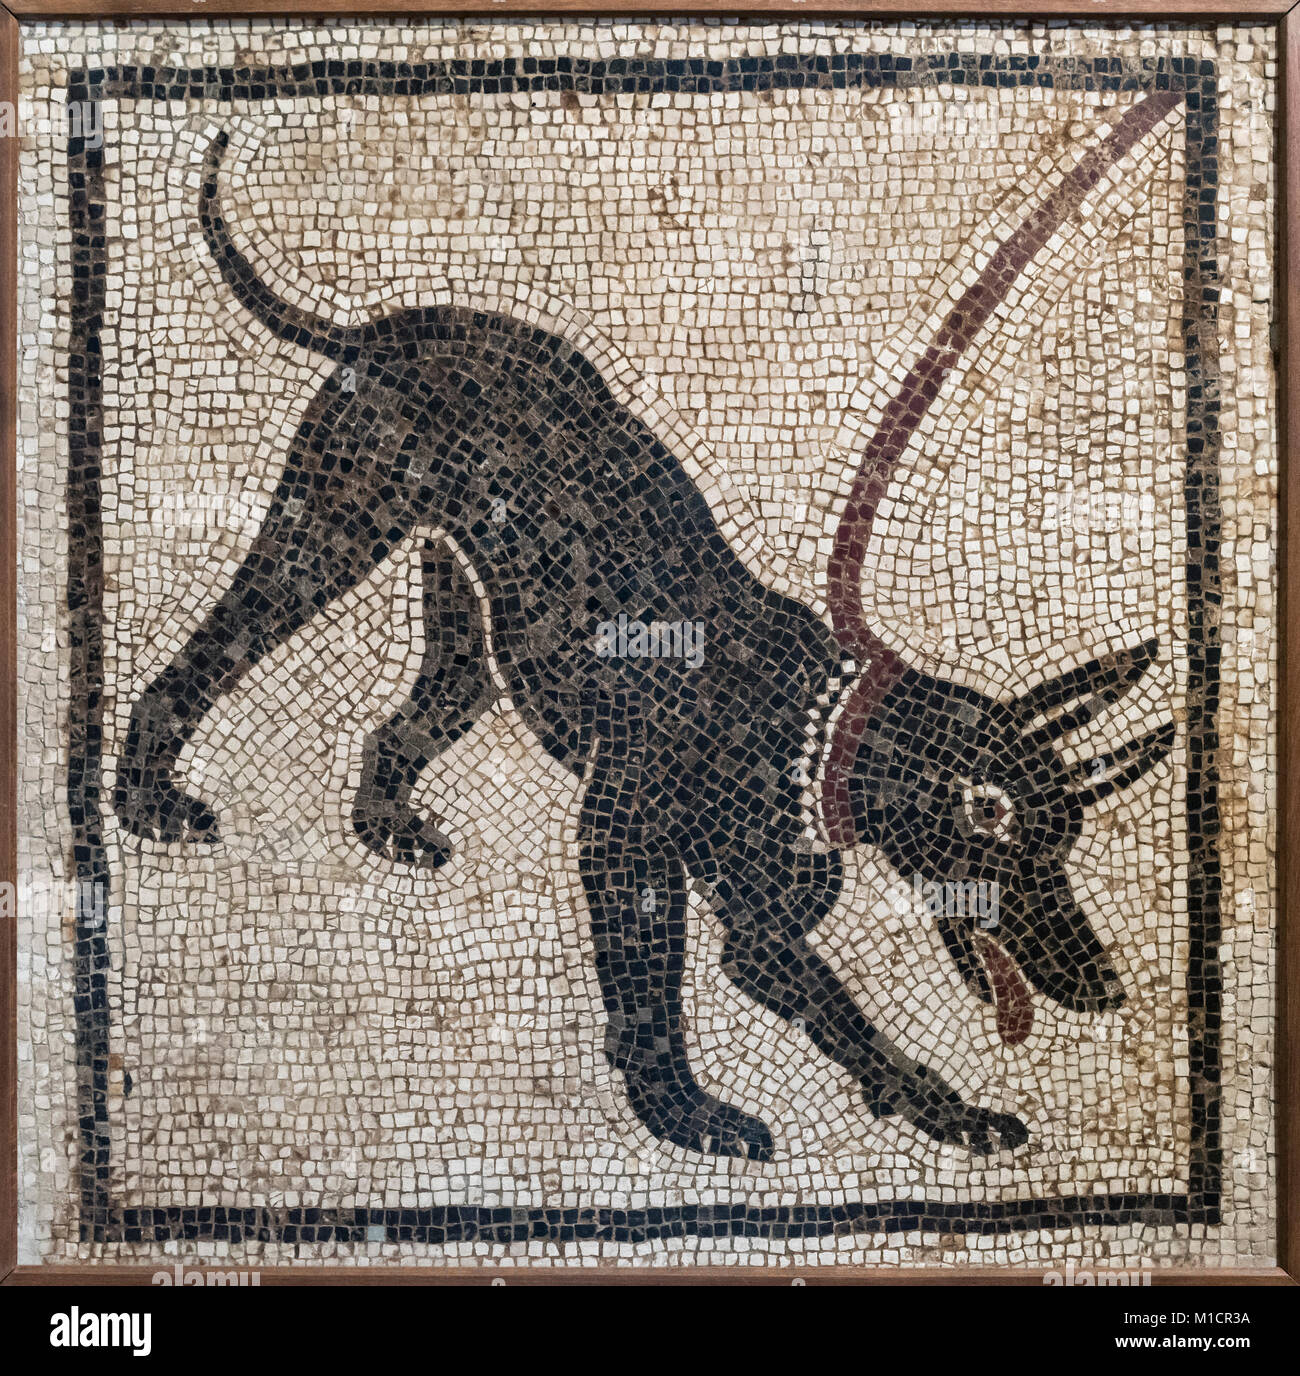 Neapel. Italien. Römische Mosaik der einen Hund an der Leine, von Pompeji. Museo Archeologico Nazionale di Napoli. Neapel Nationalen Archäologischen Museum. Von der Via Stockfoto